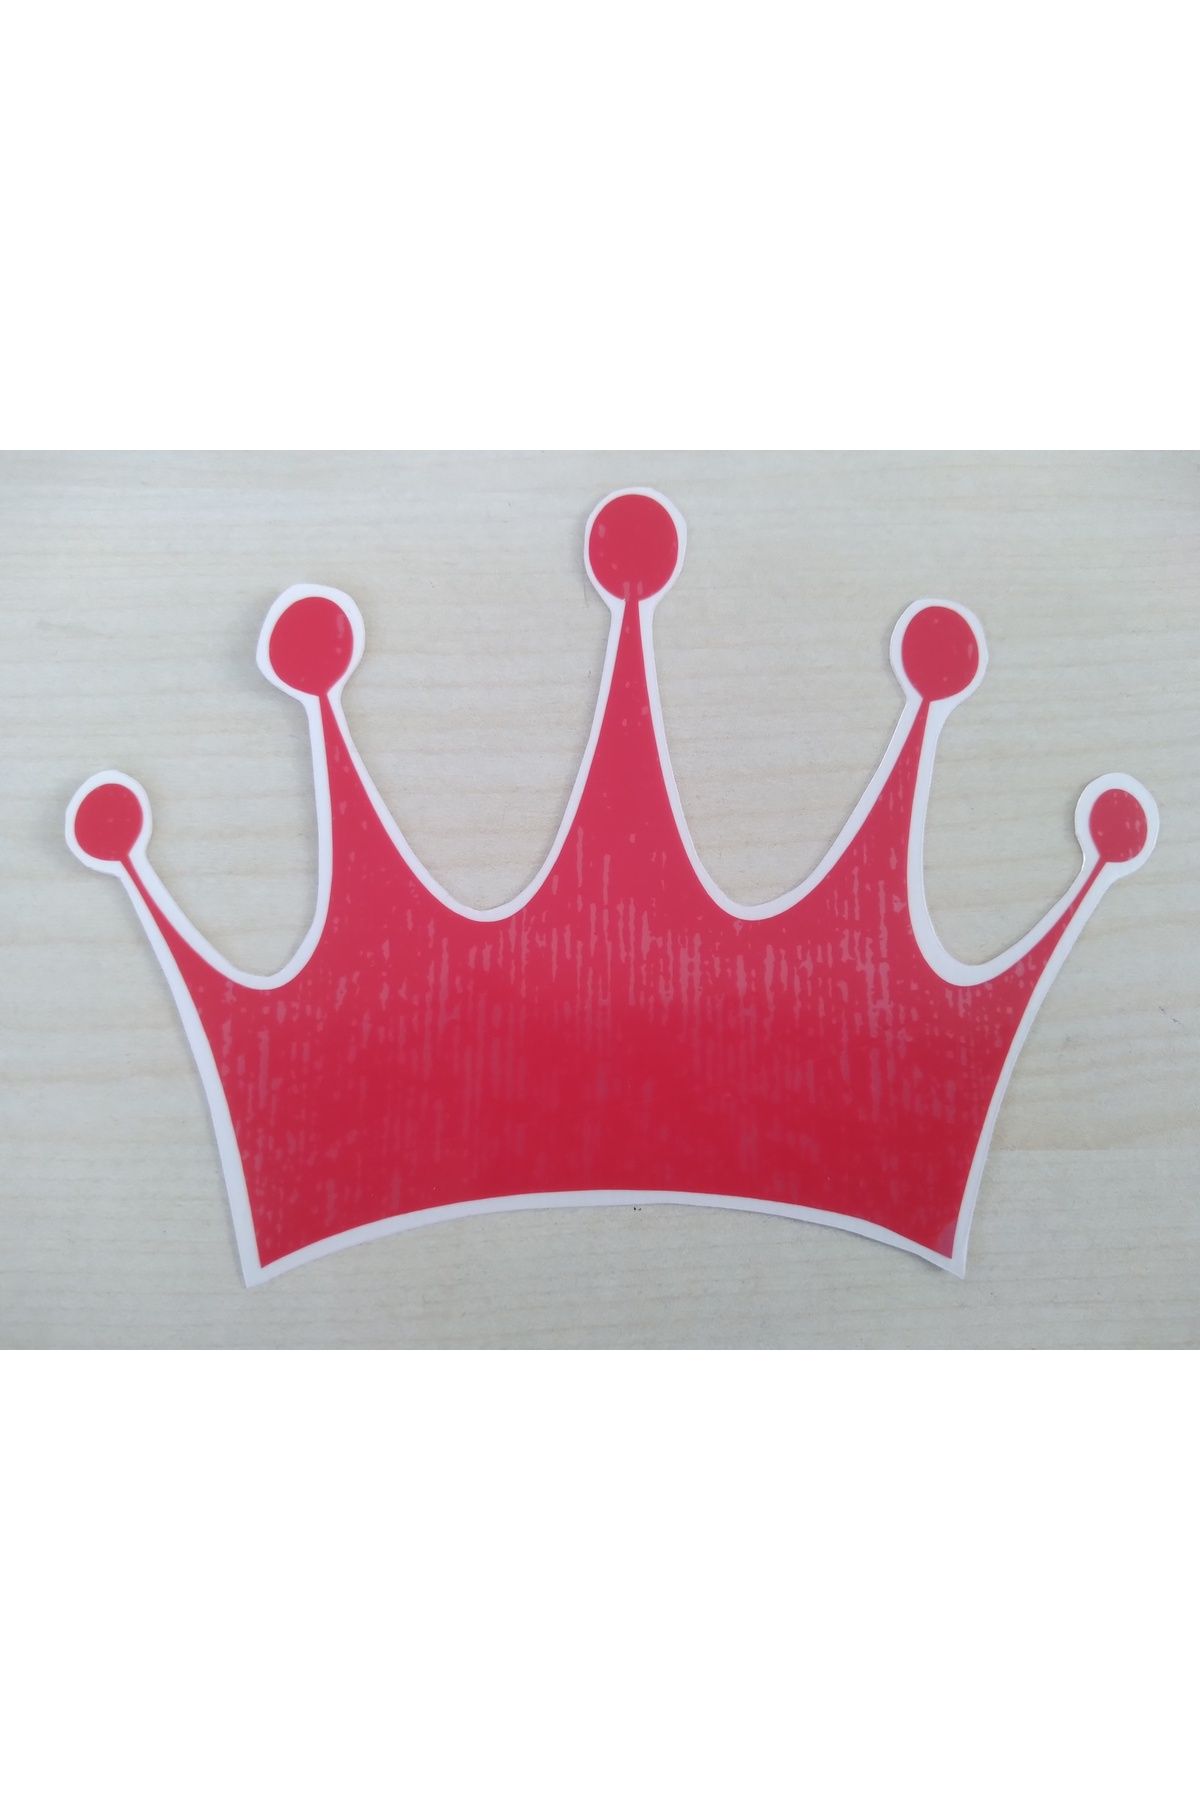 Yerli Kral Tacı Sticker Kırmızı 13,5x9,5cm (2ADET FİYATI) King Sticker, Kral Tacı Etiketi Çıkartması